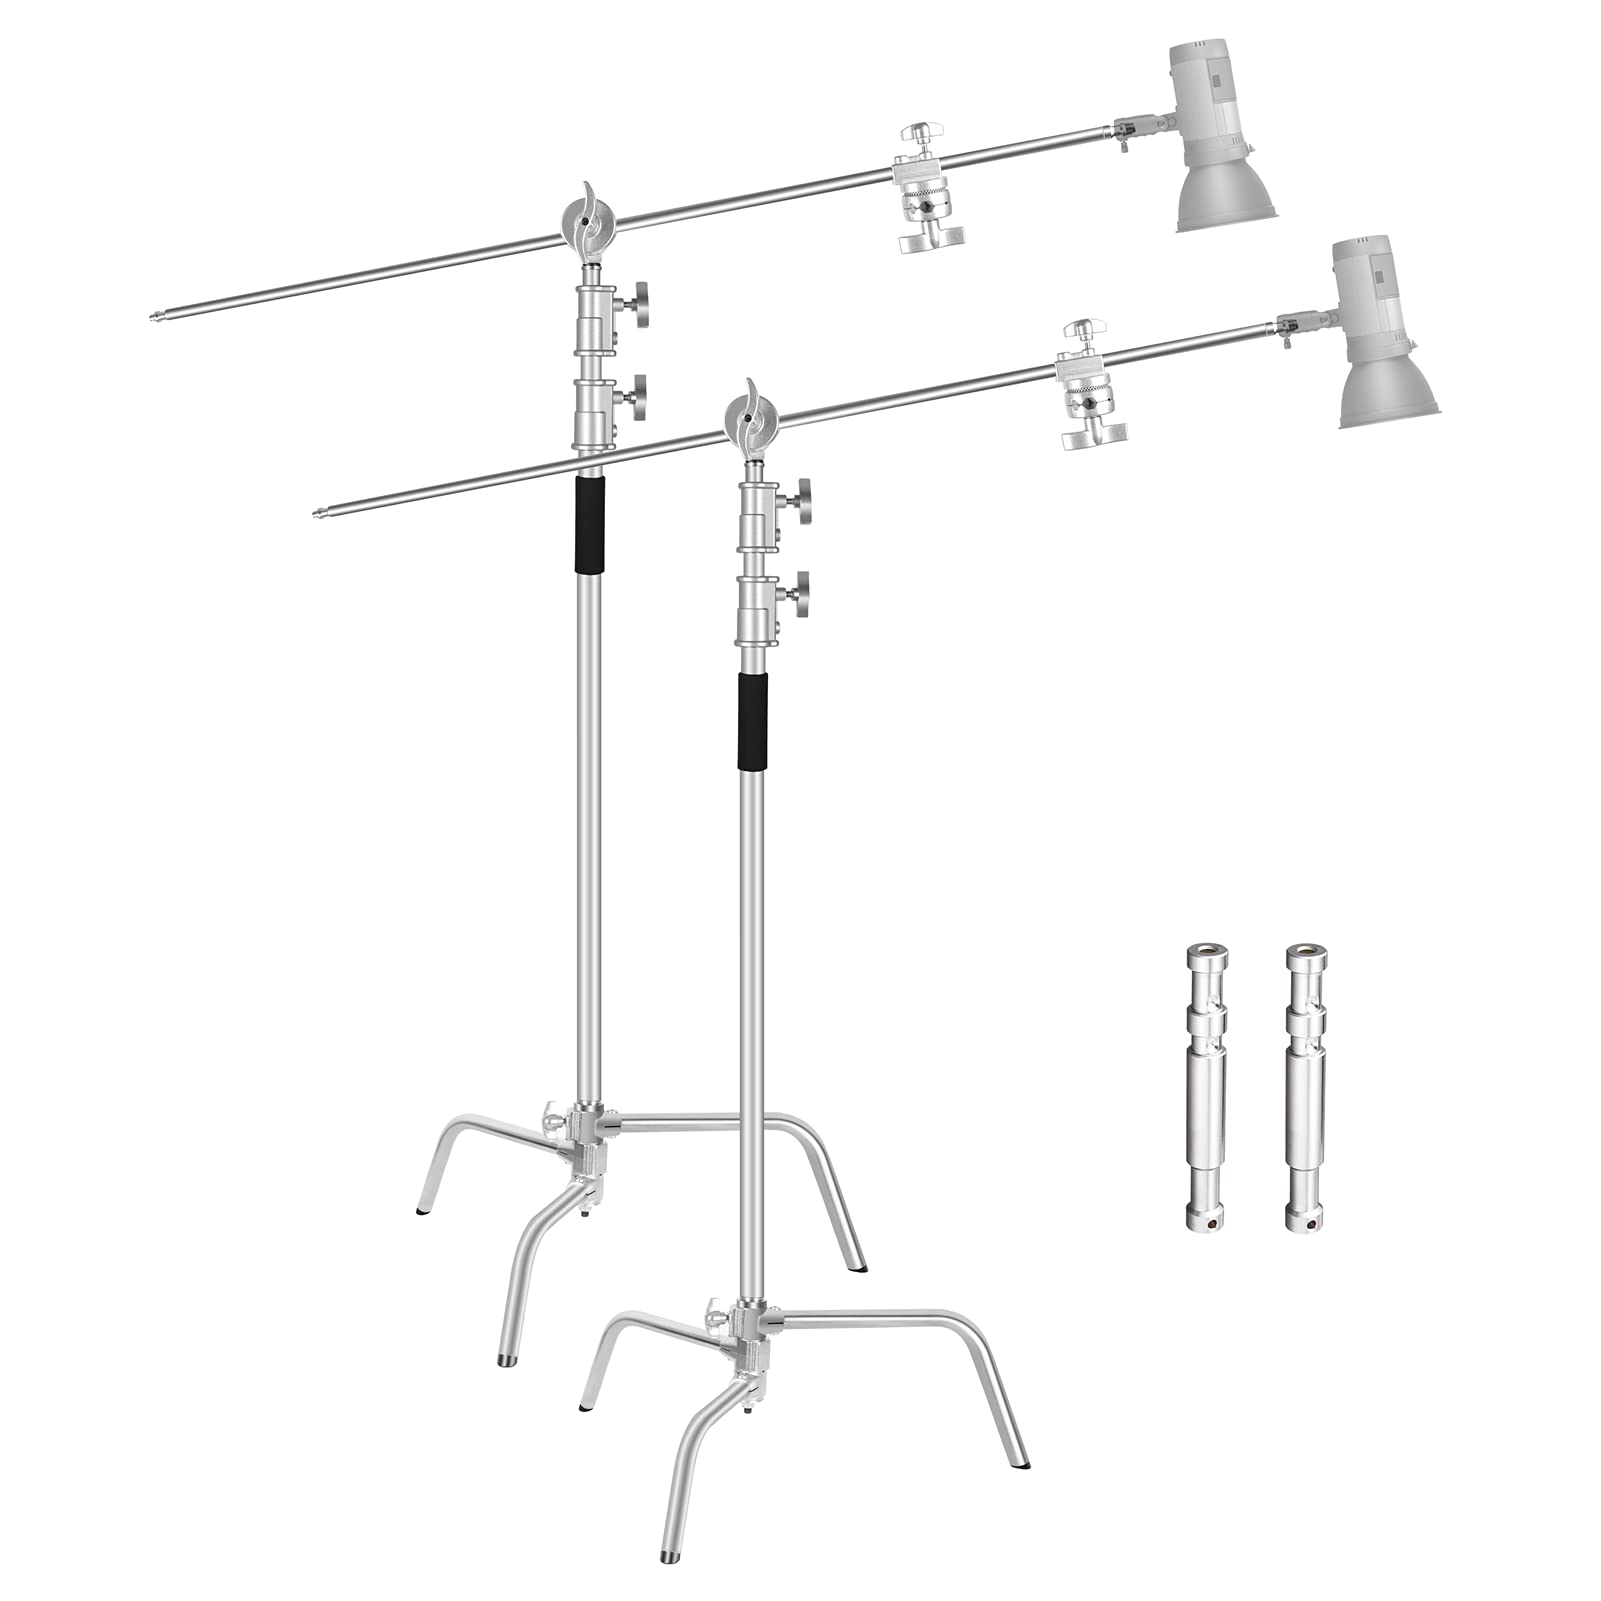 EMART 2er Pack C Stand mit Boom Arm, 300 cm Verstellbares Edelstahl-Beleuchtungsstativ mit 128 cm Haltearm, Kugelgelenk für Reflektor, Softbox, Monolight, Regenschirm